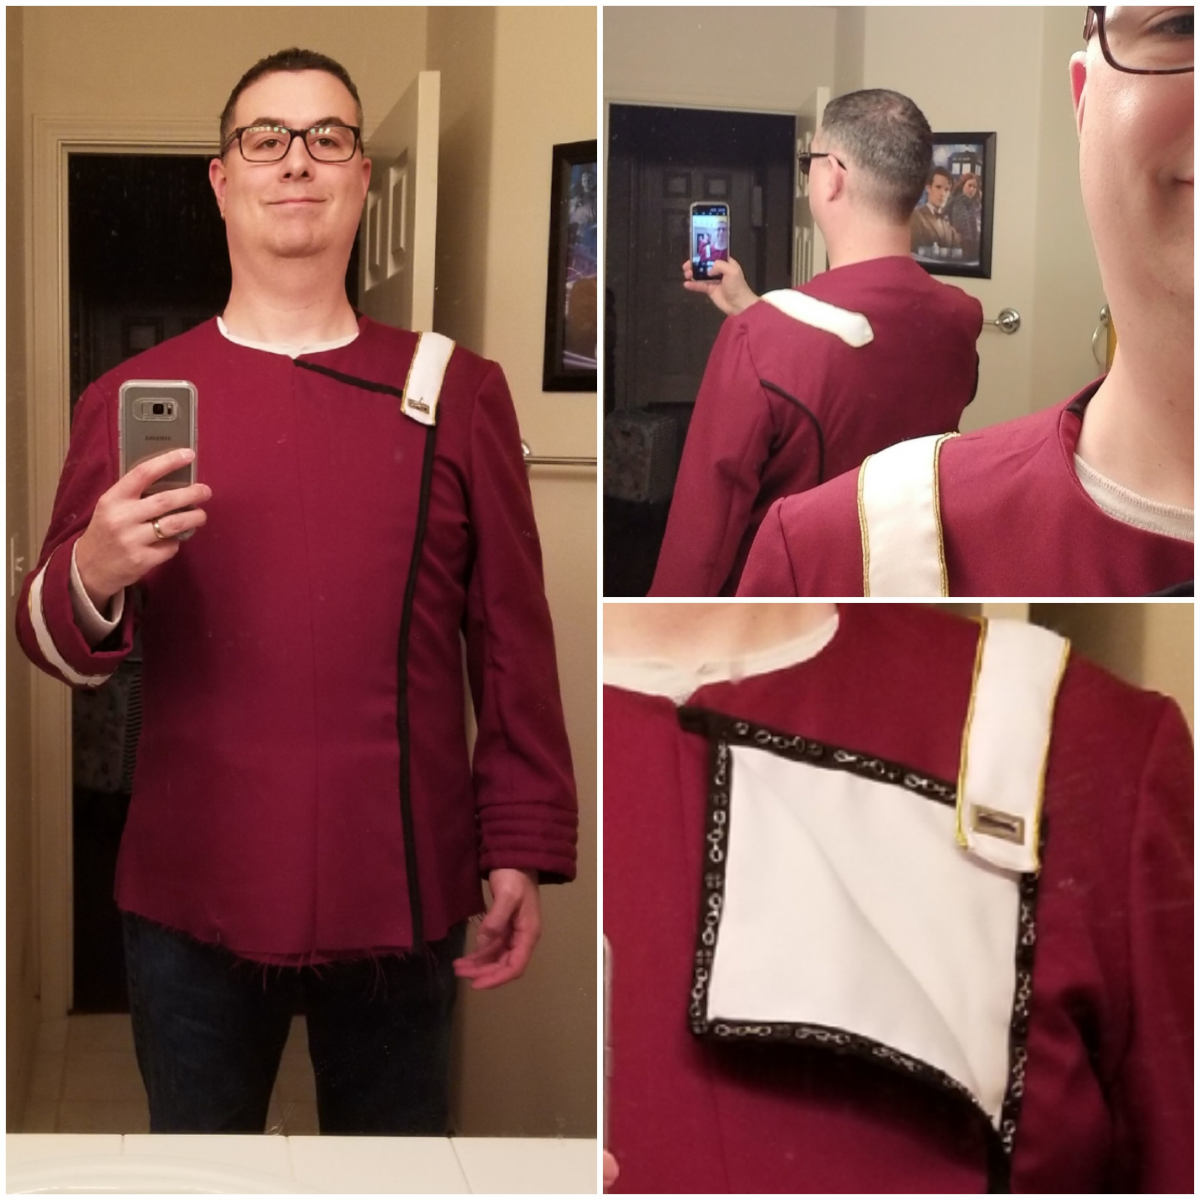 September 29, 2019: The shoulder strap attached